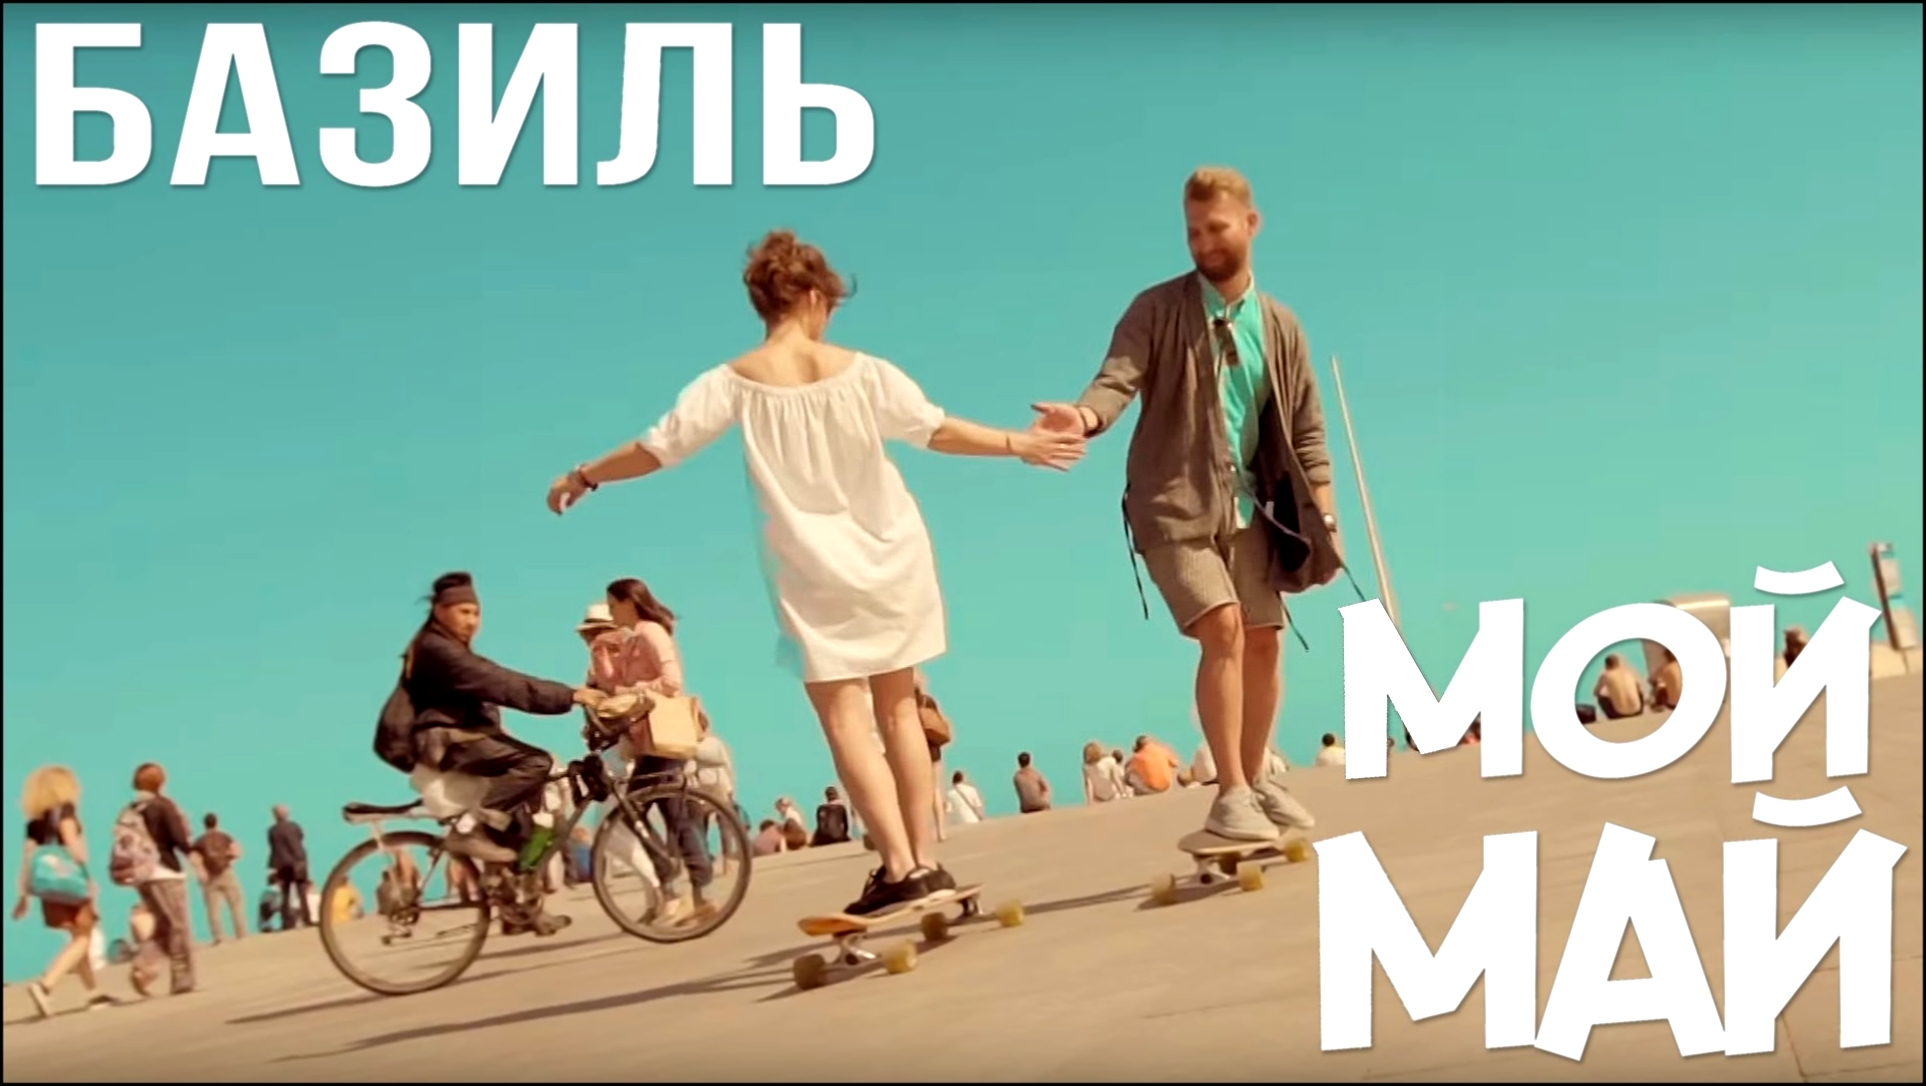 Базиль - Мой май (Официальный клип) - видеоклип на песню